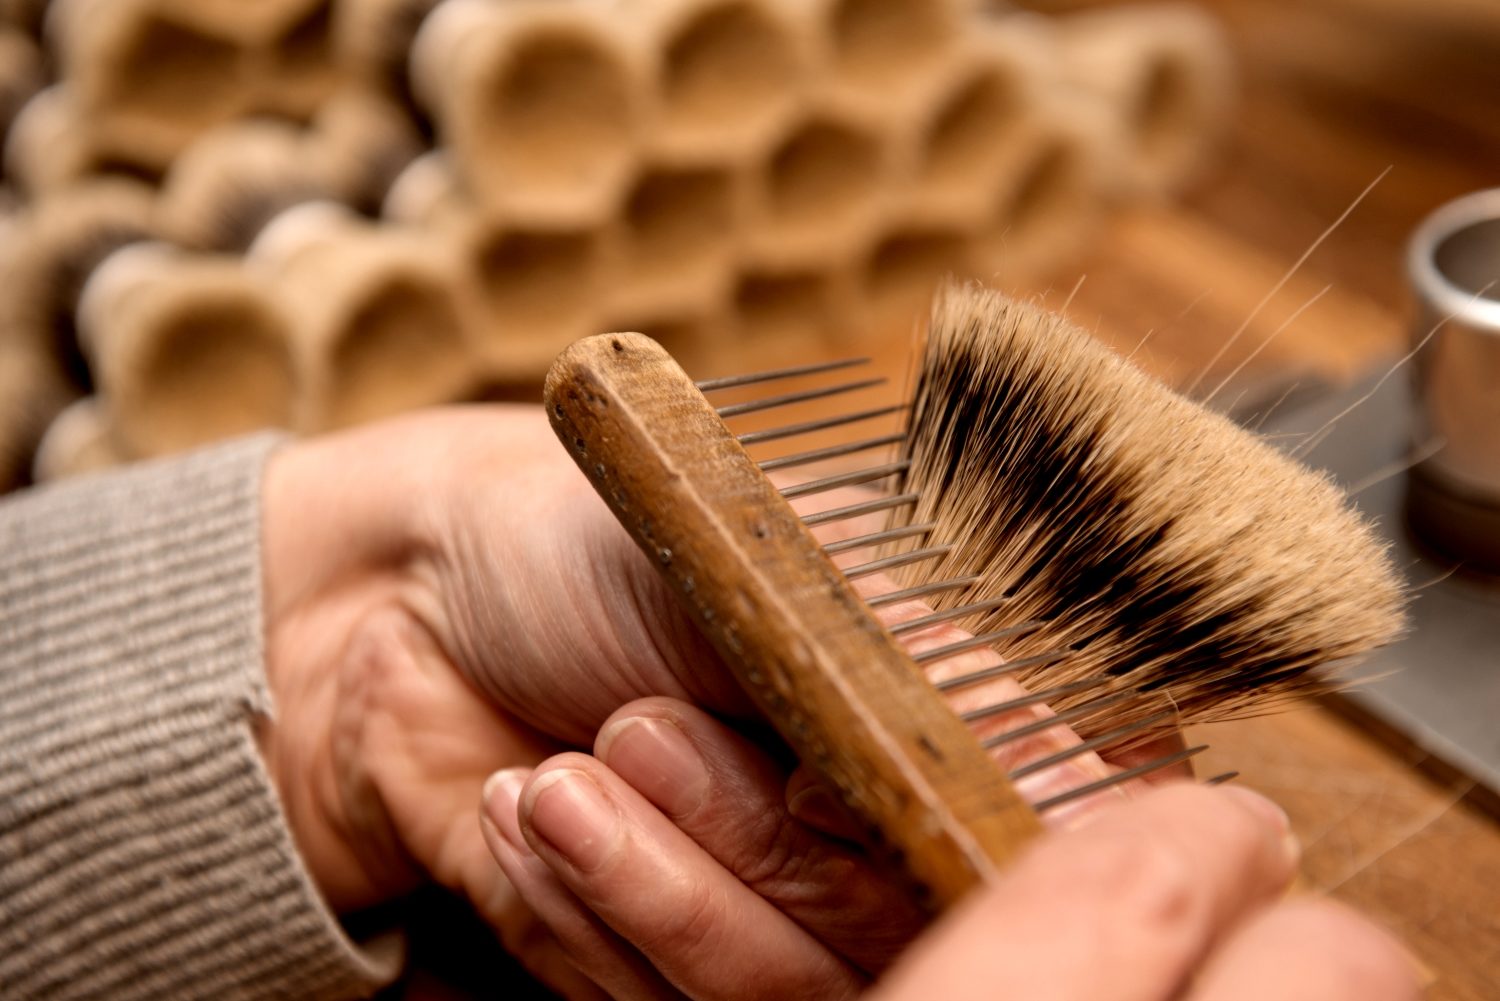 Manufakturen-Blog: Eine von Mühles Bürstenmacherinnen zeigt das Auskämmen quersitzender Dachshaare des Rasierpinsels (Foto: Manufakturhaus)